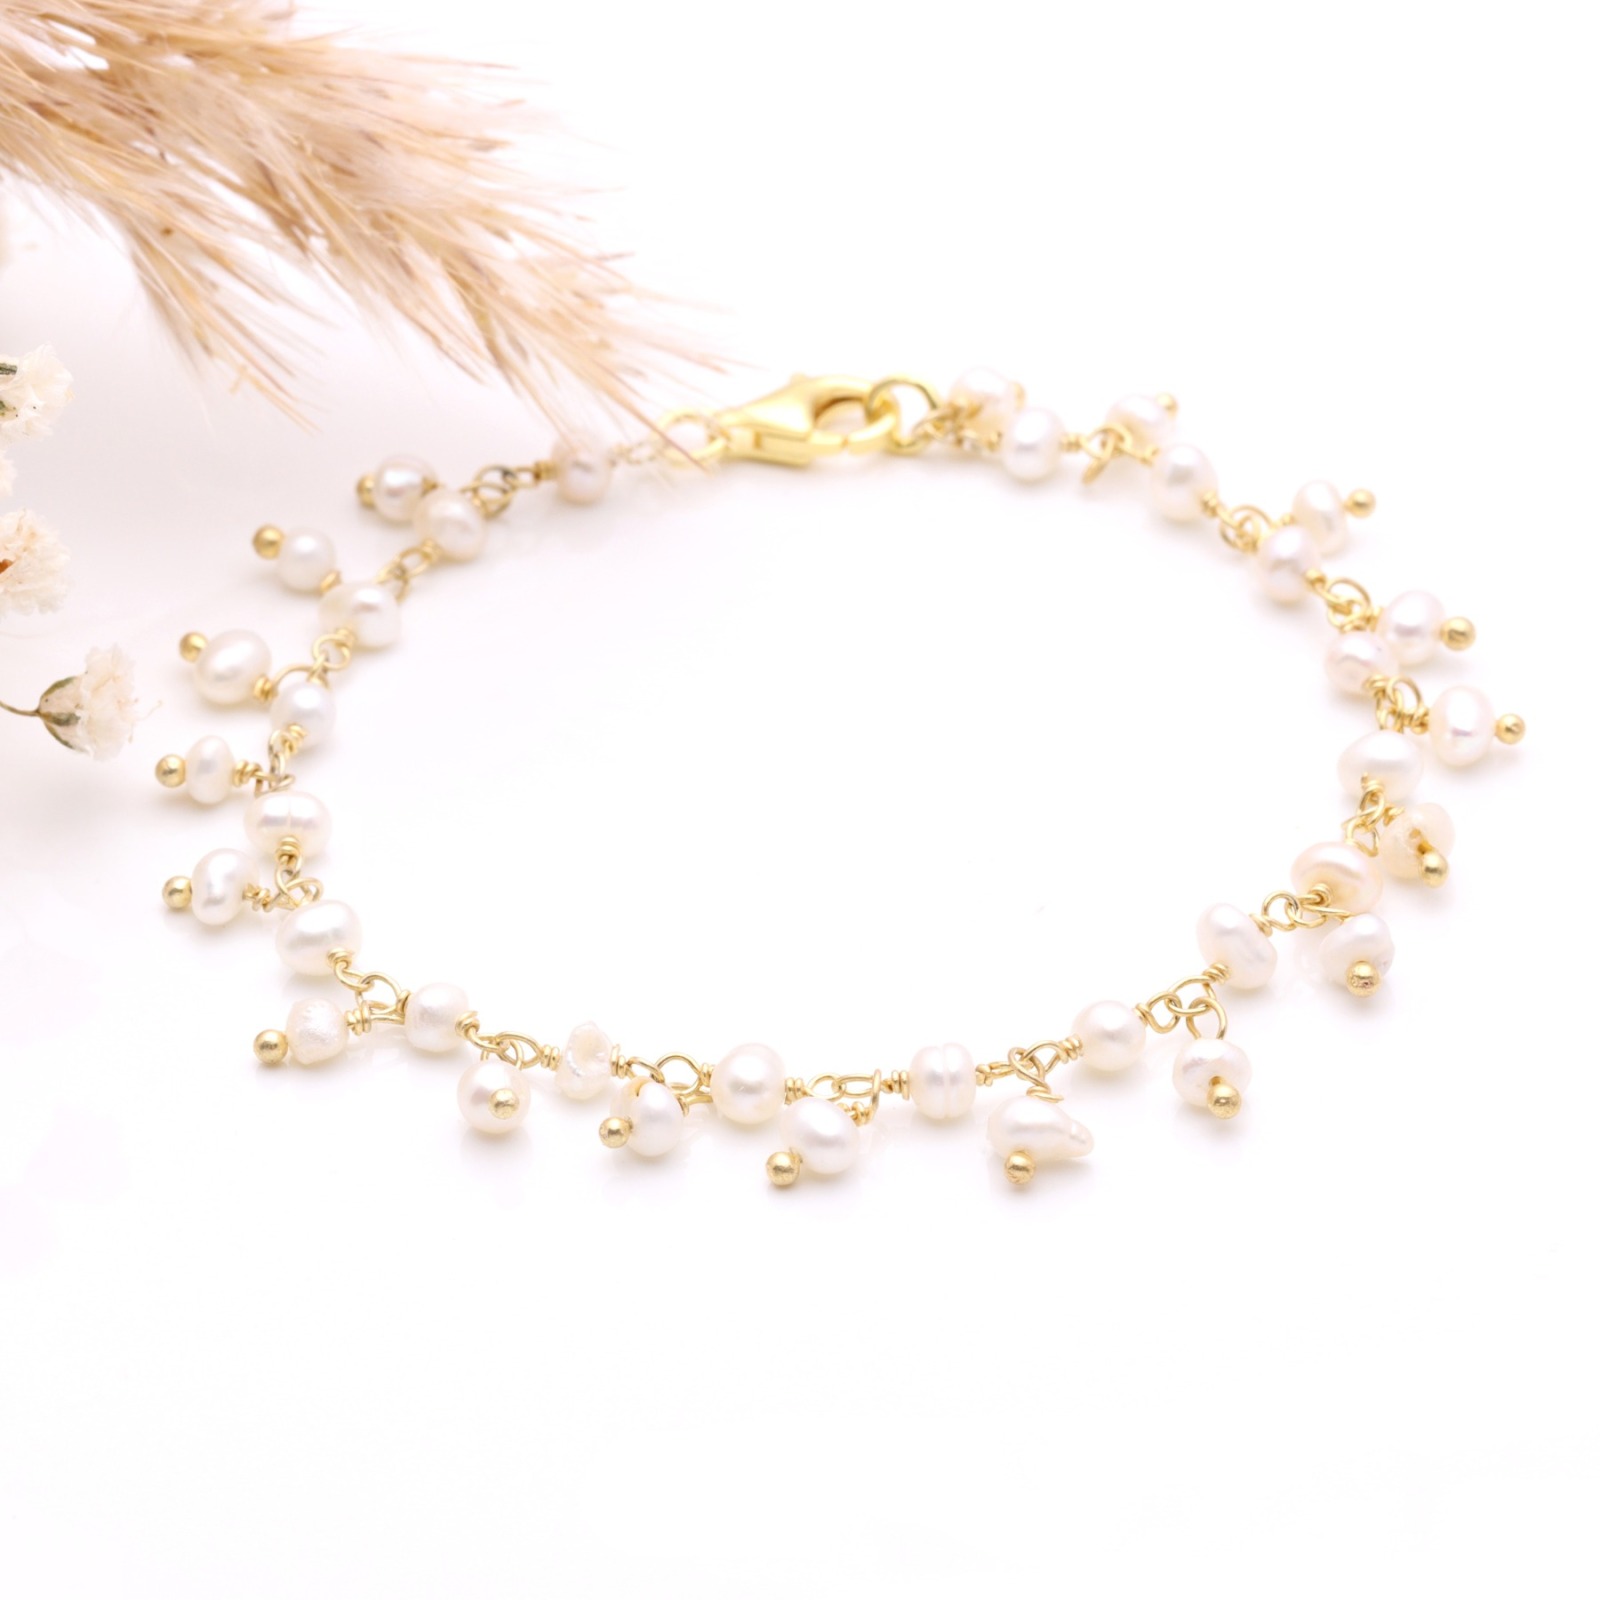 Goldenes Armband aus echten Perlen, 925er Silber vergoldet